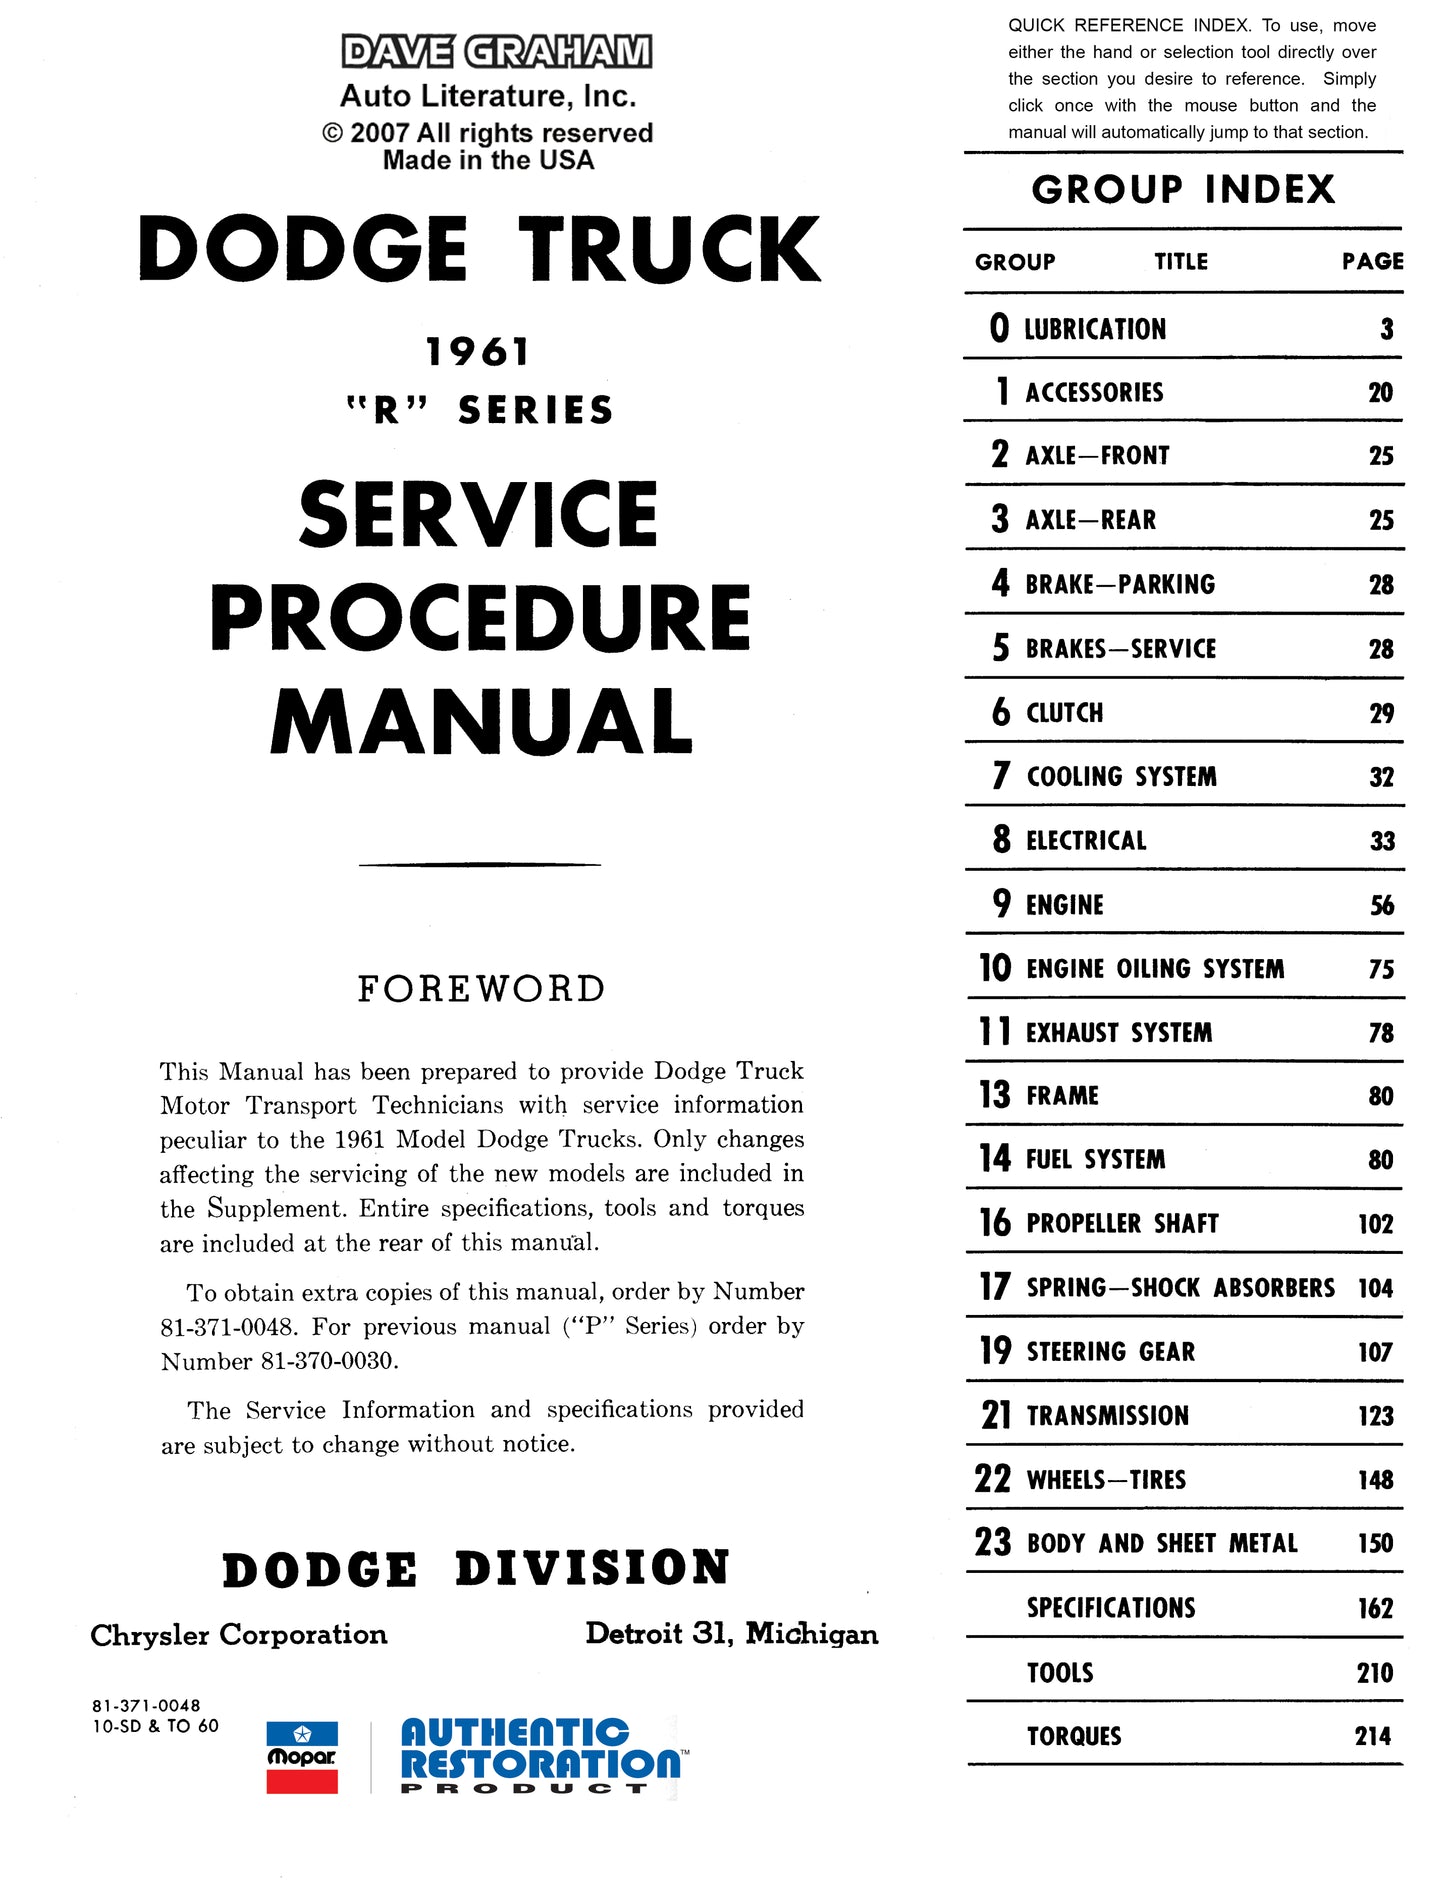 1960-1961 Dodge Truck Shop Manual - All Models